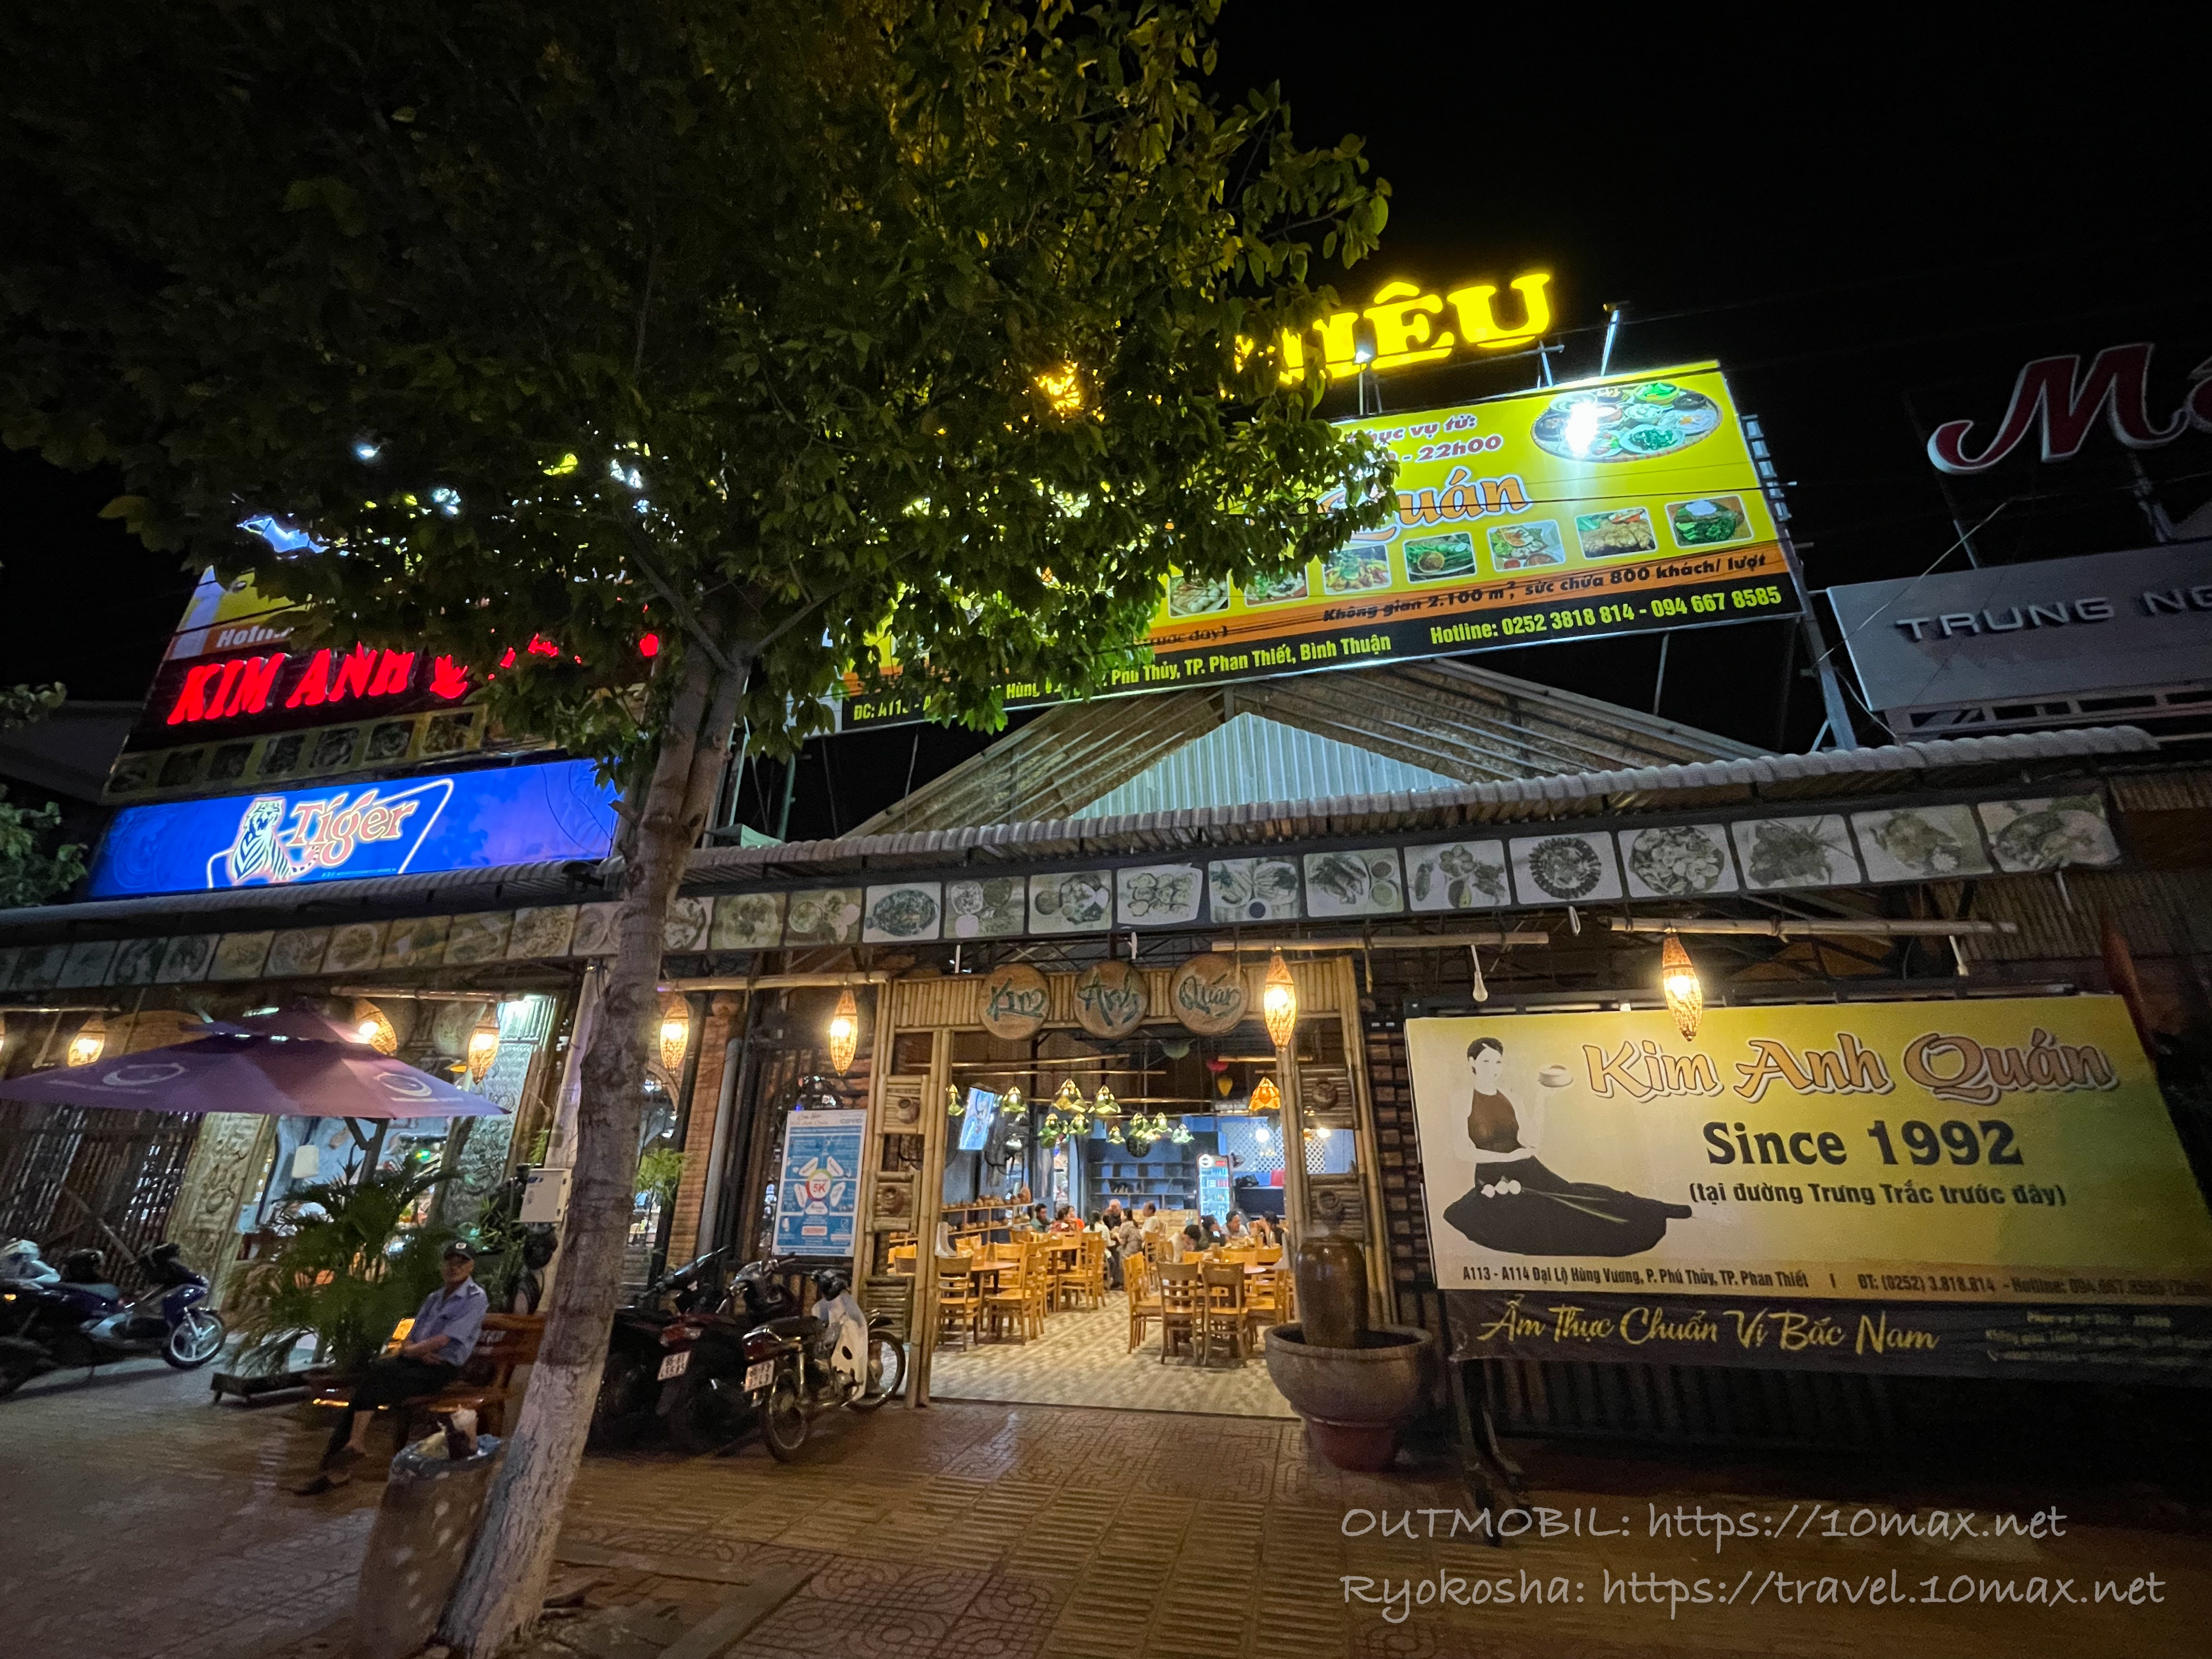 Cơm Niêu Kim Anh Quán, ムイネー・ファンティエットの海鮮料理店